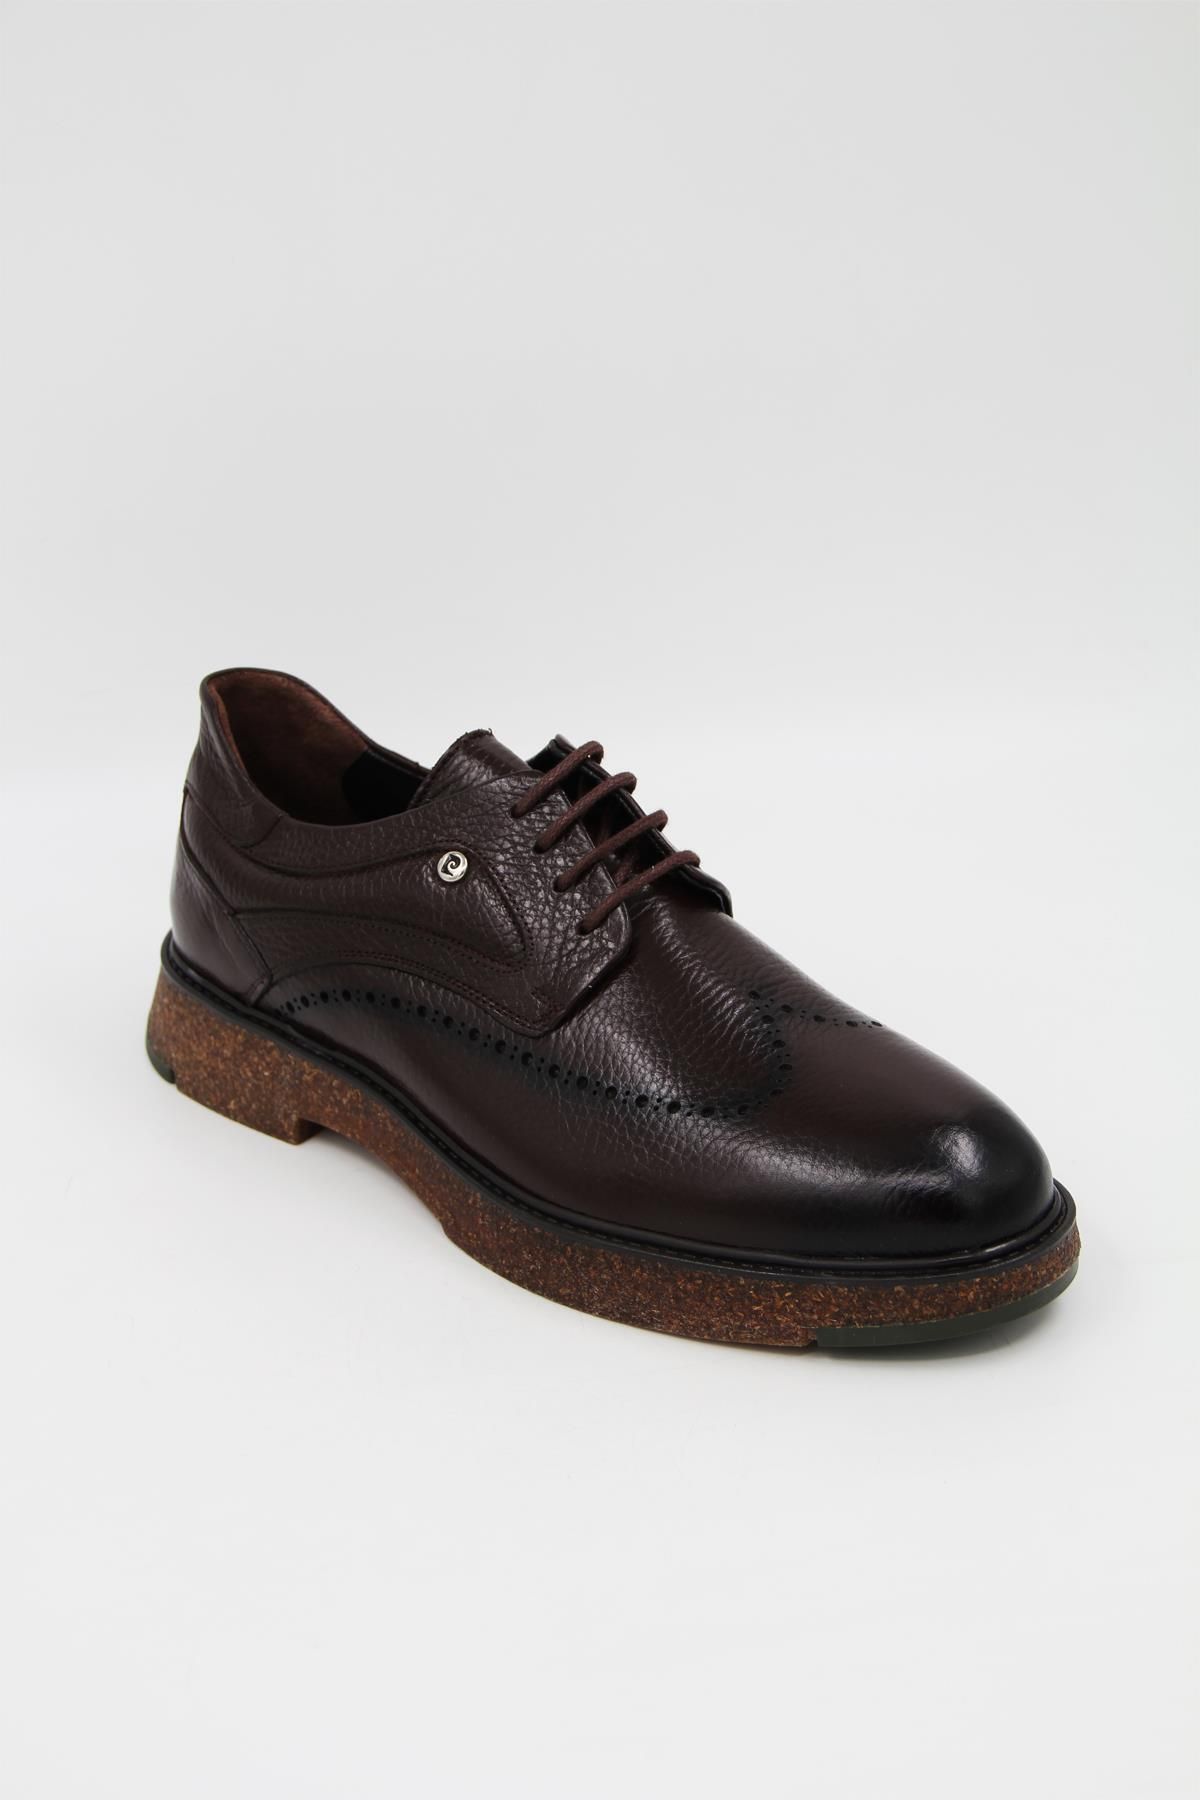 Pierre Cardin 16965 Erkek Klasik Ayakkabı - Kahverengi